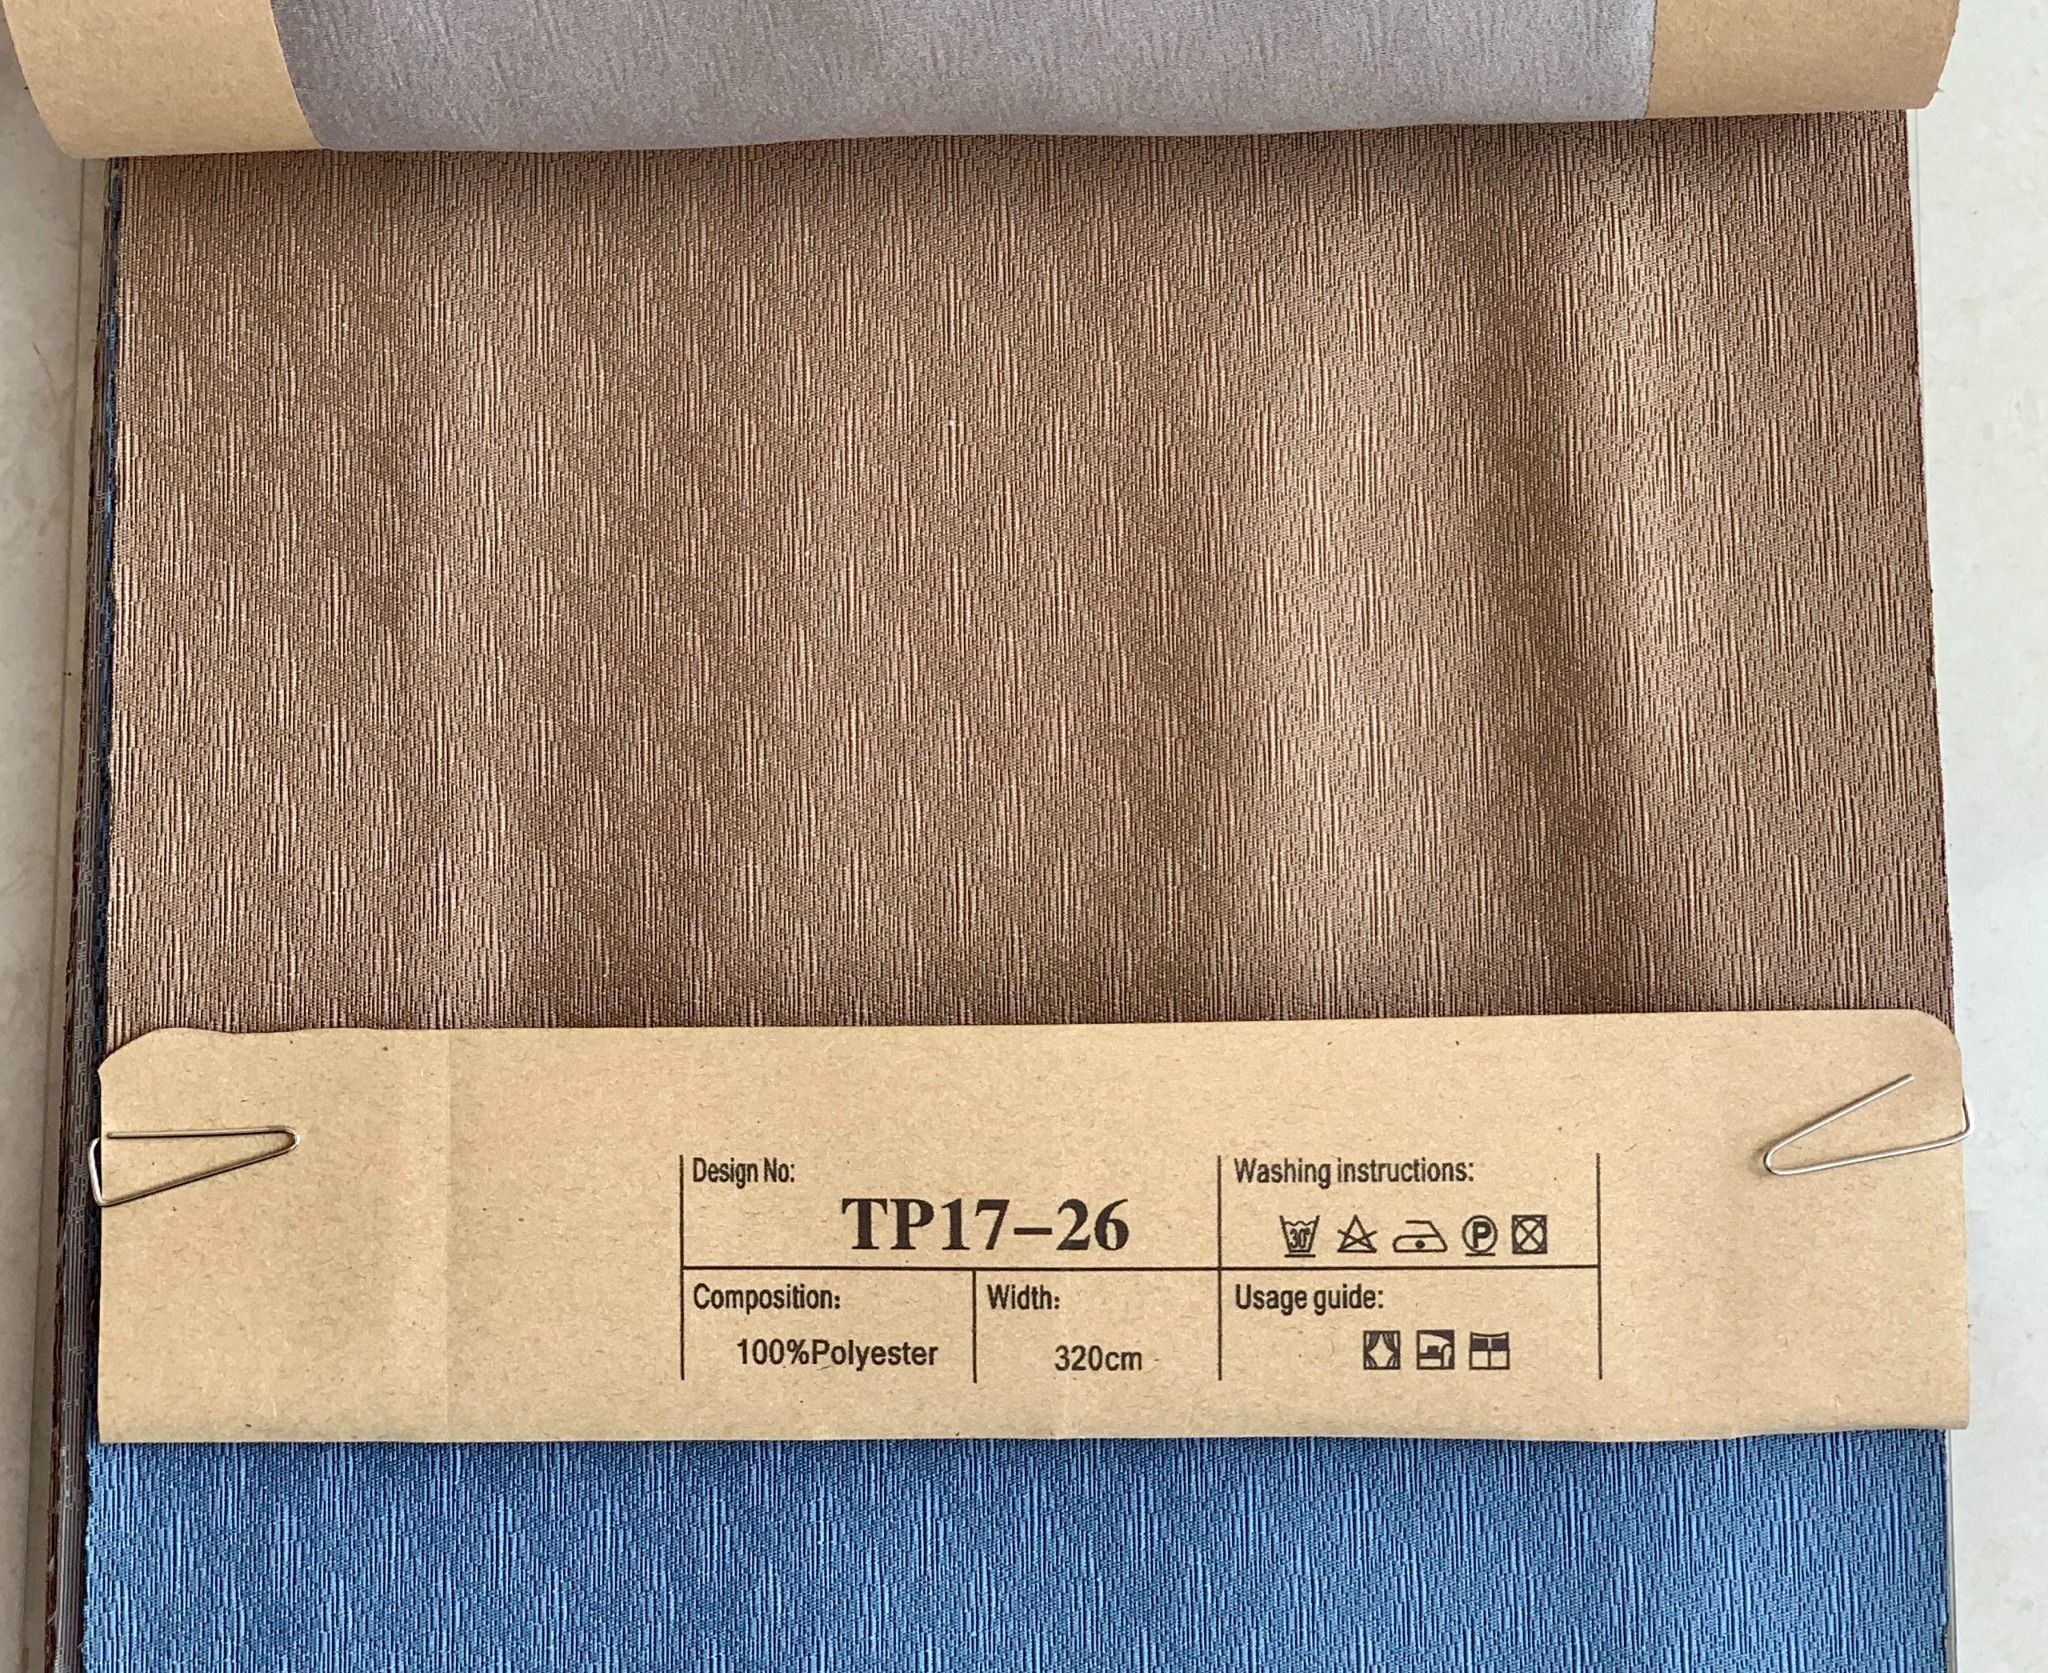  Vải Rèm cao cấp Khổ 320 - Vải Vải may rèm cửa giá rẻ - Gấm may rèm BMT 